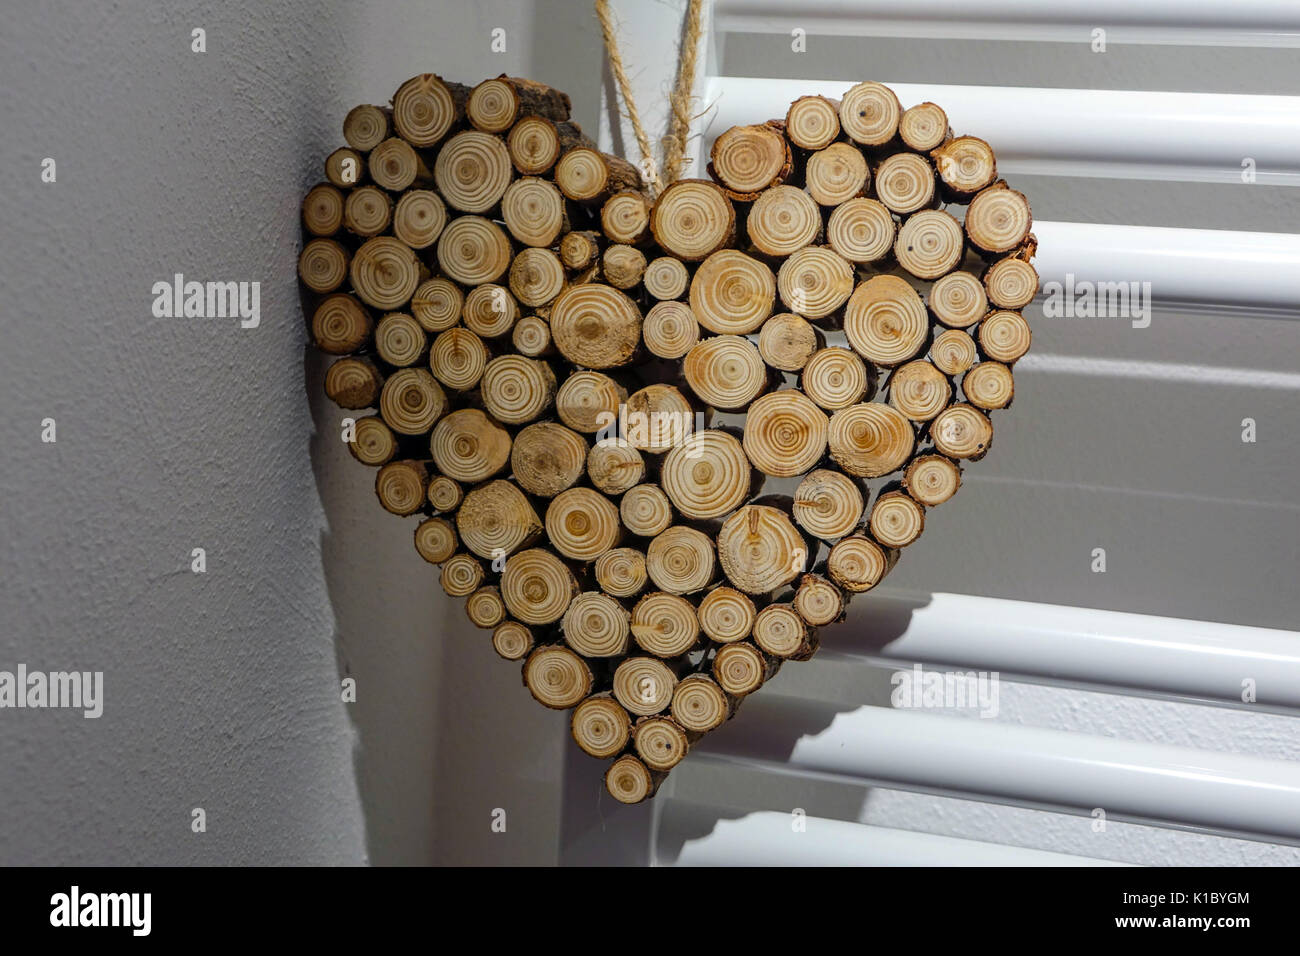 Corazon de madera fotografías e imágenes de alta resolución - Alamy